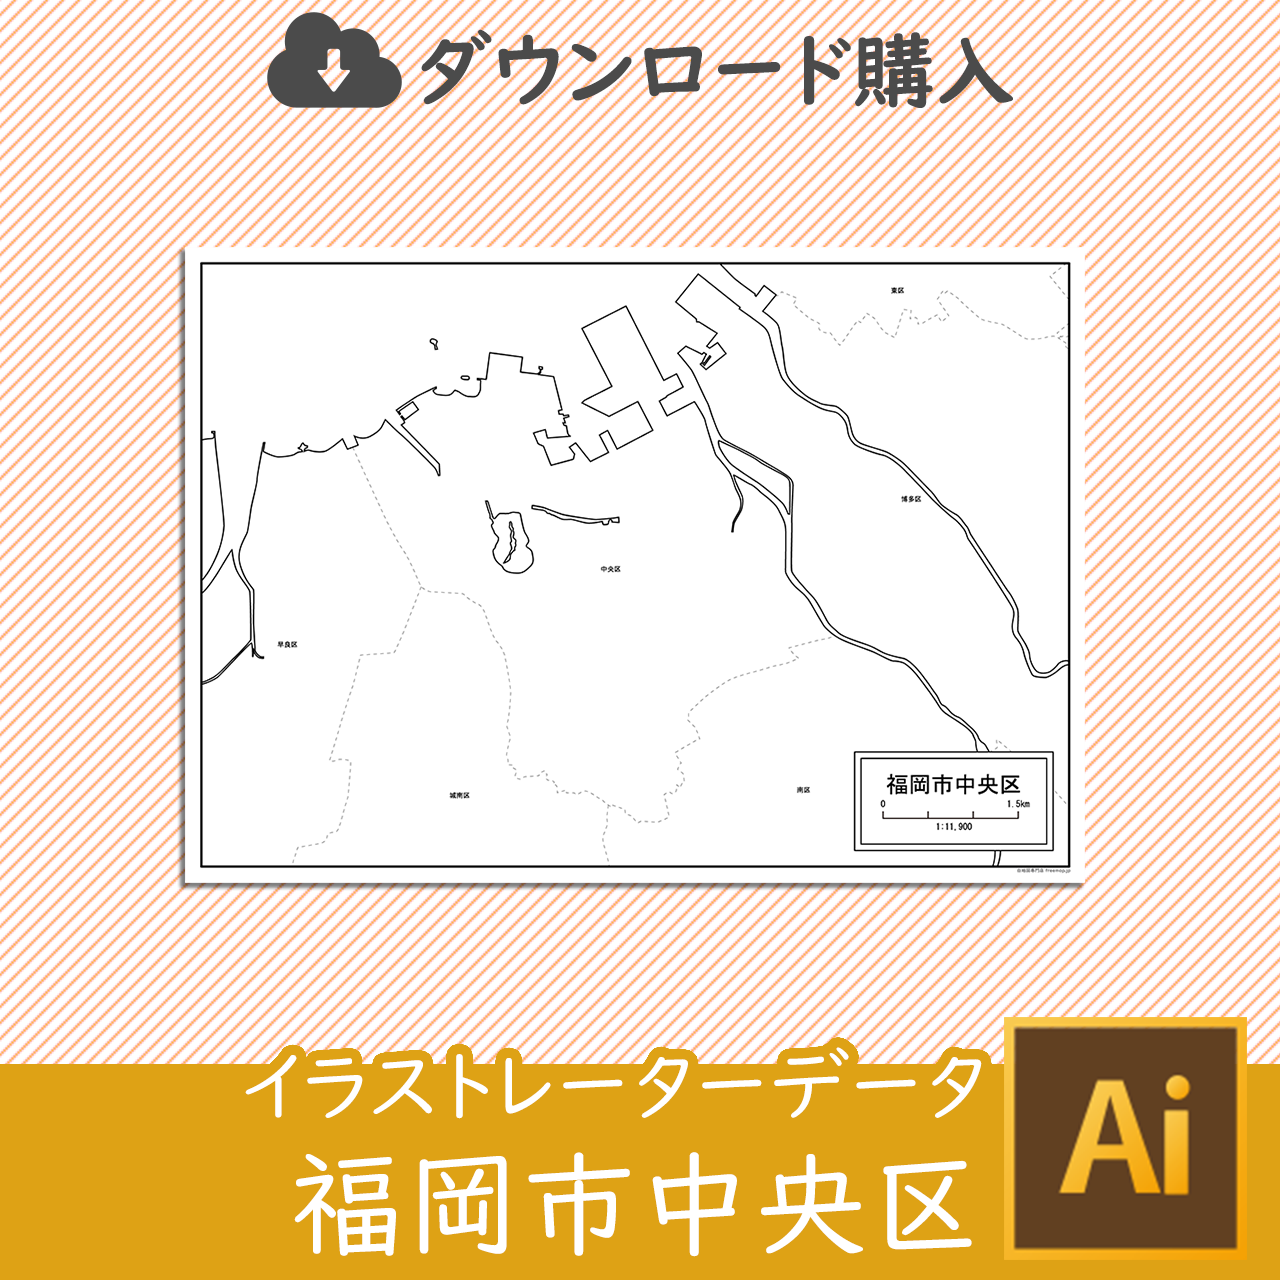 福岡市中央区のaiデータのサムネイル画像